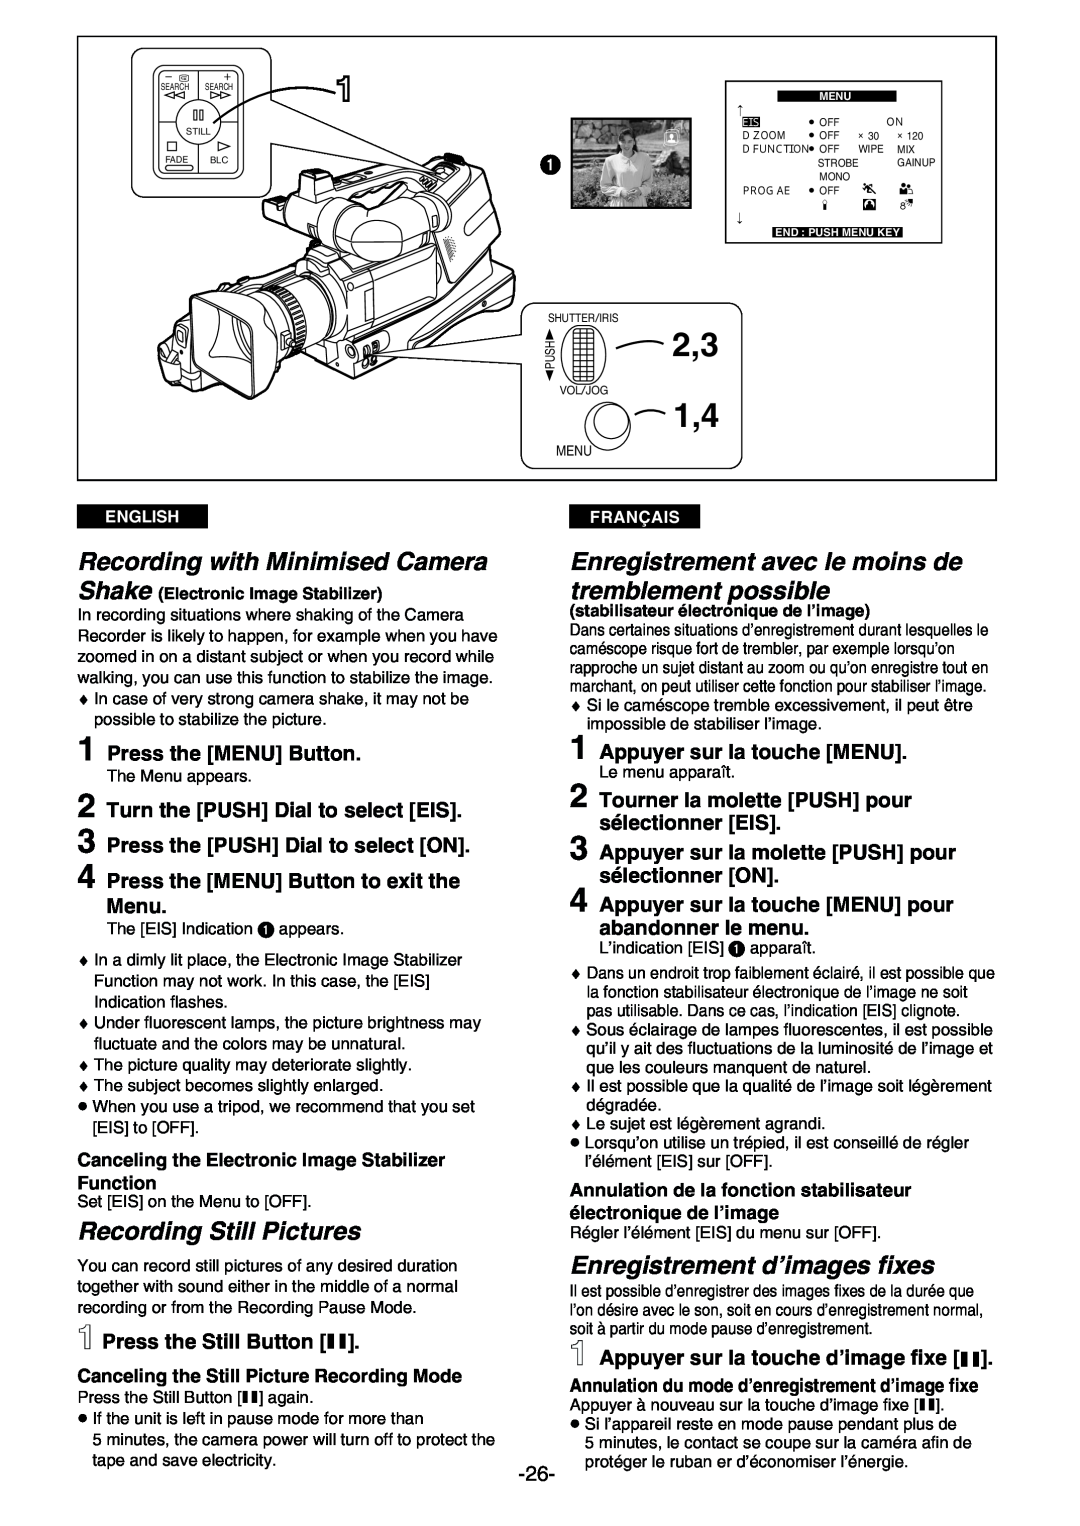 Panasonic AG- DVC 15P manual Recording with Minimised Camera, Enregistrement avec le moins de tremblement possible, Menu 